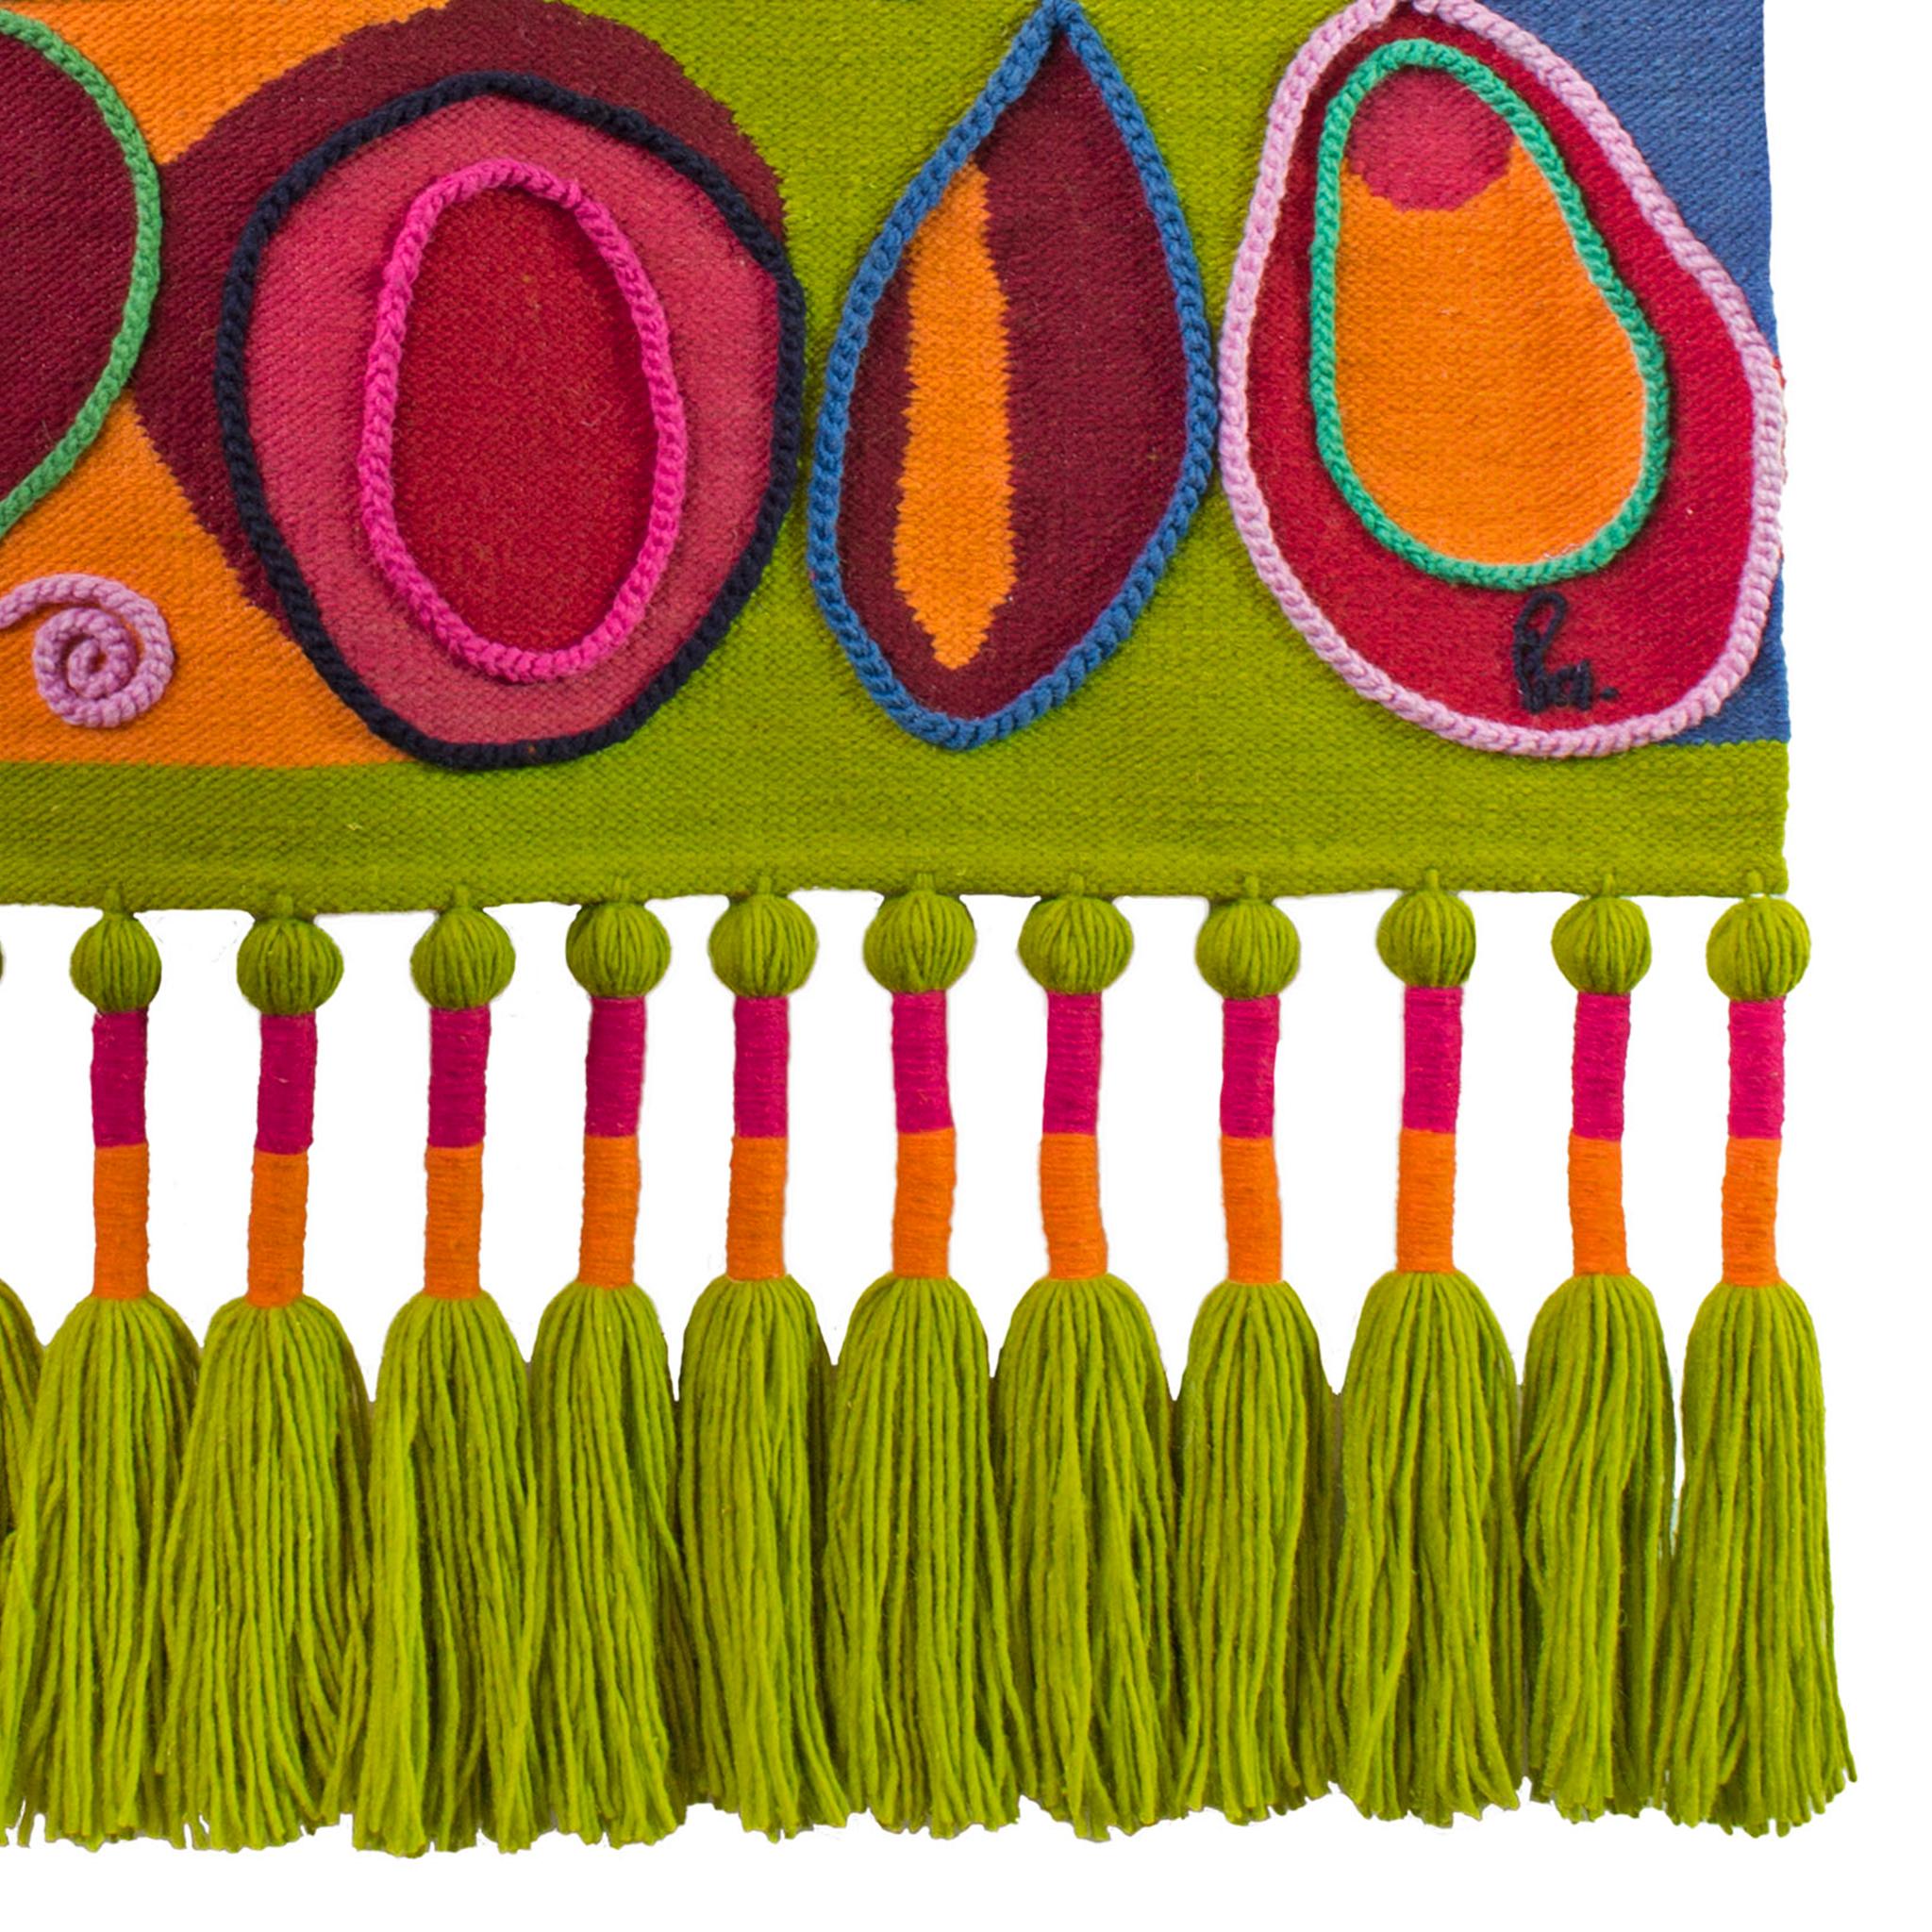 Fabriquée à partir de 100 % de laine de mouton équatorienne, la tapisserie Frutas est un témoignage de l'art traditionnel. Tissé à la main et méticuleusement teint avec des pigments inaltérables, chaque pièce est une expression unique de compétence